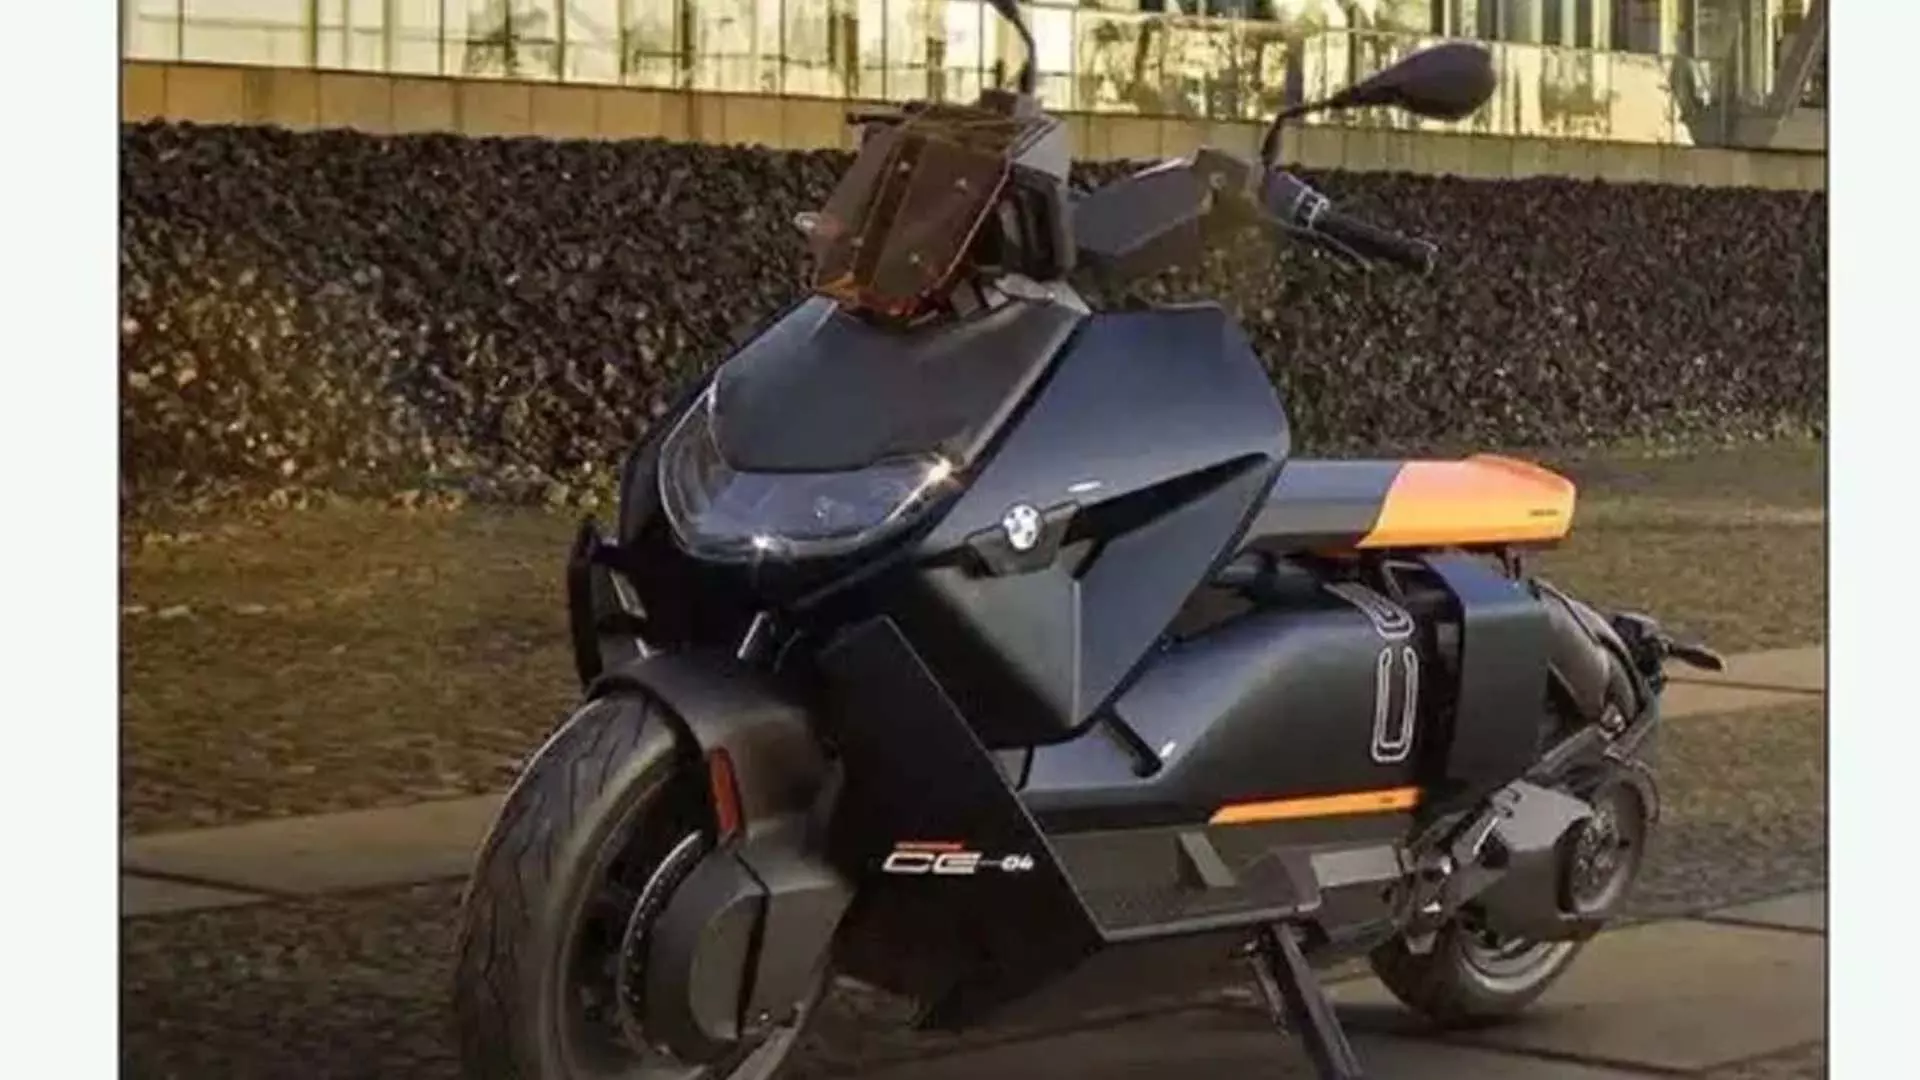 BMW Motorrad : 24 जुलाई को भारत में अपना CE 04 इलेक्ट्रिक स्कूटर लॉन्च करने जा रही